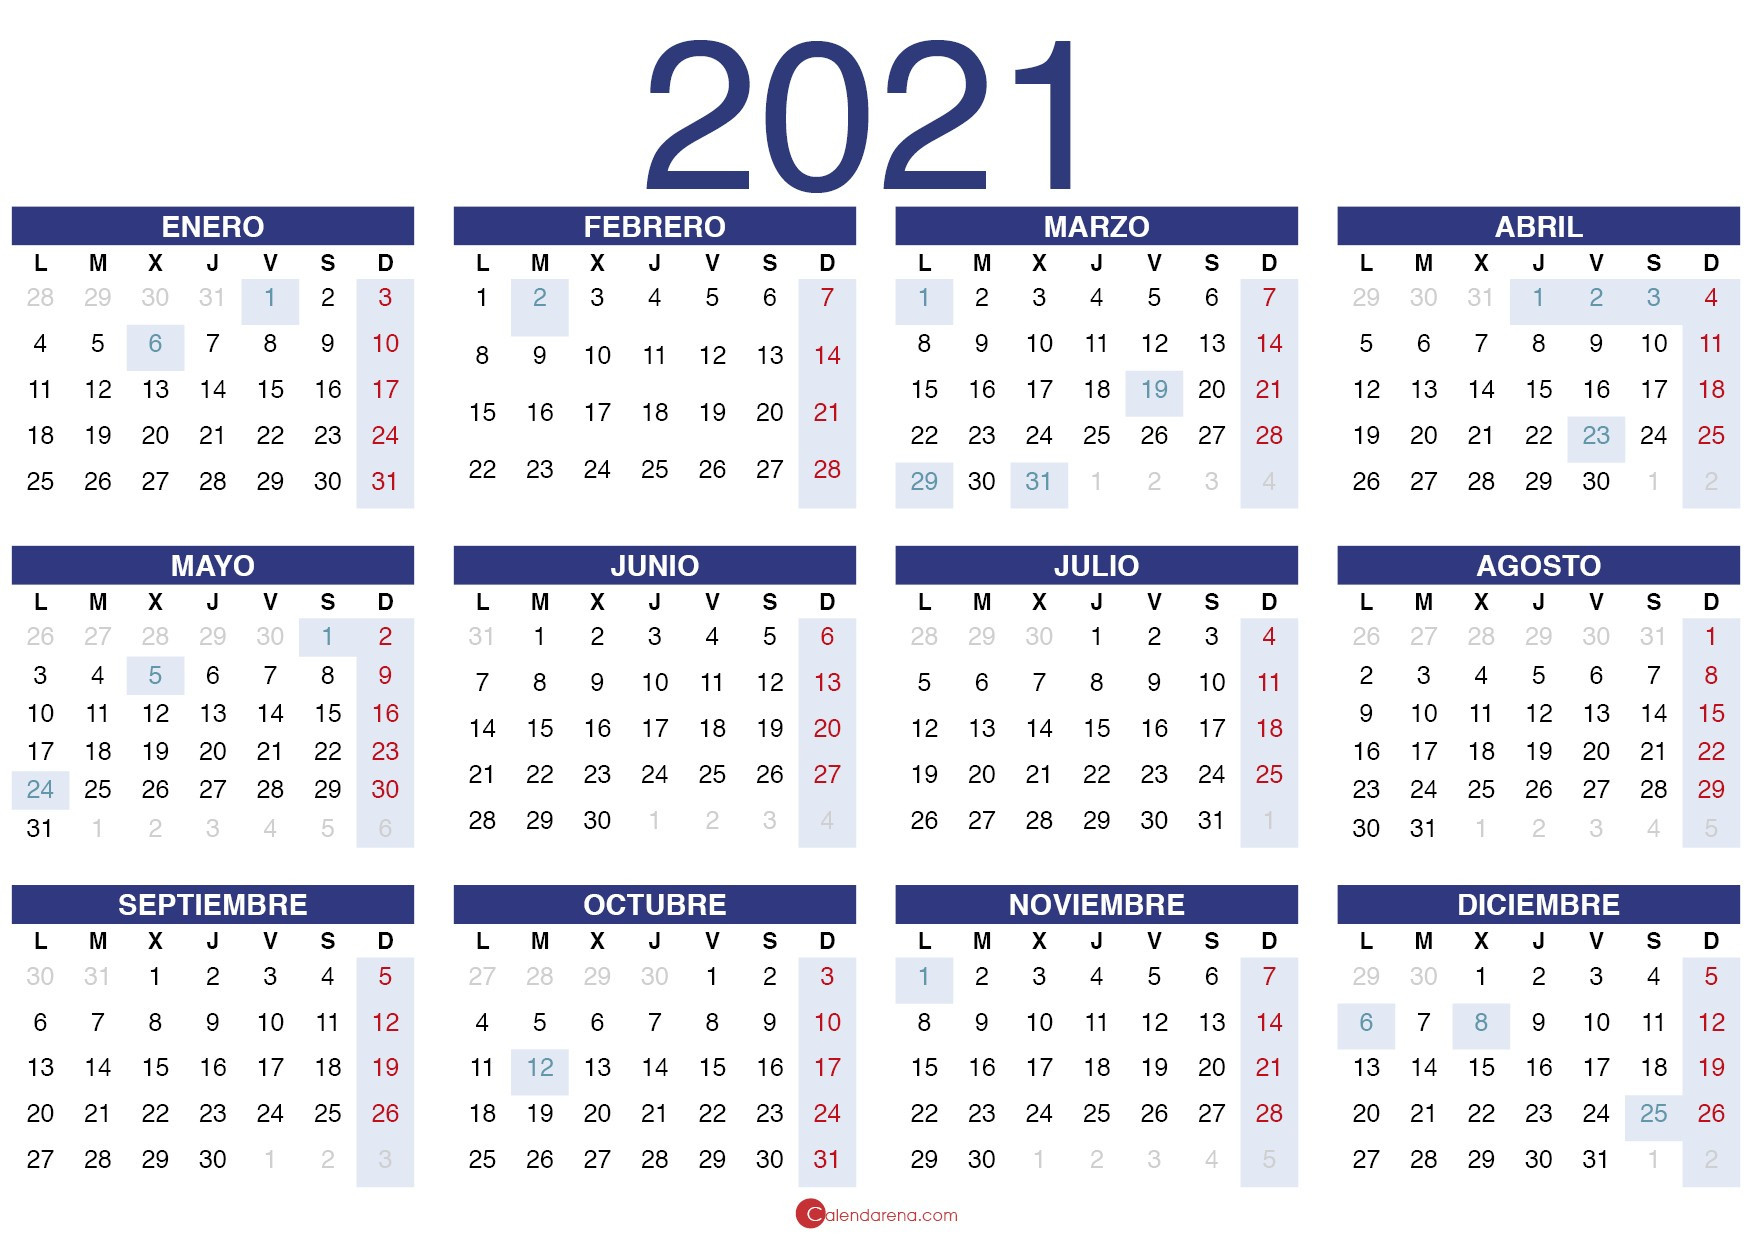 Calendario 2021 Pdf  Calendario 2021 Con Las Semanas